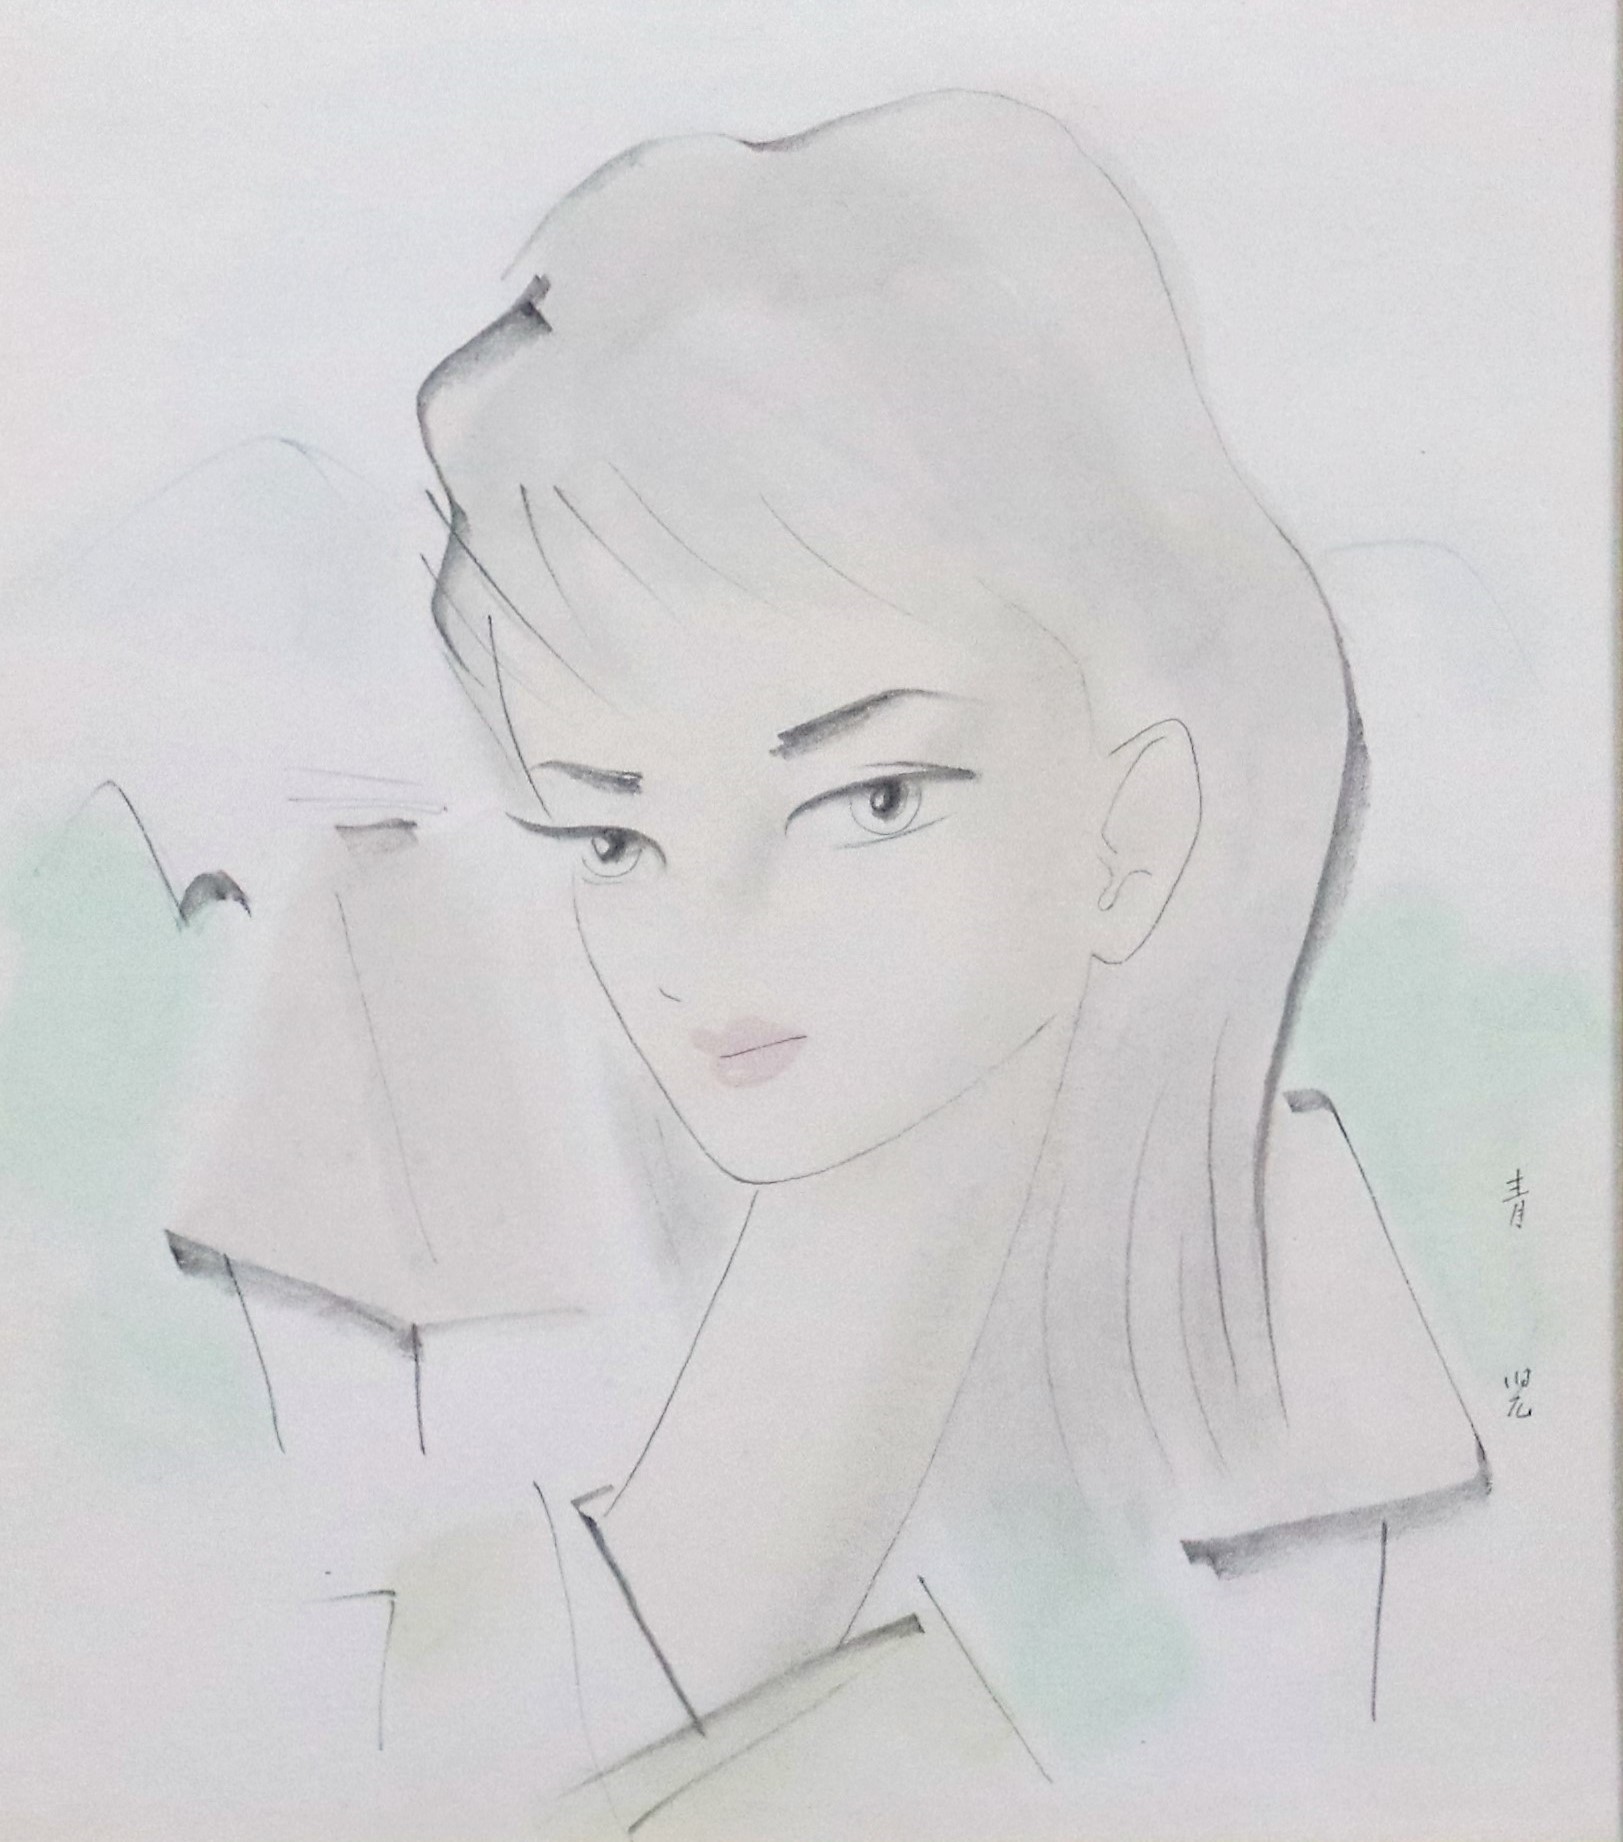 おうちギャラリー 東郷青児先生の「婦人像」水彩画を紹介いたし 